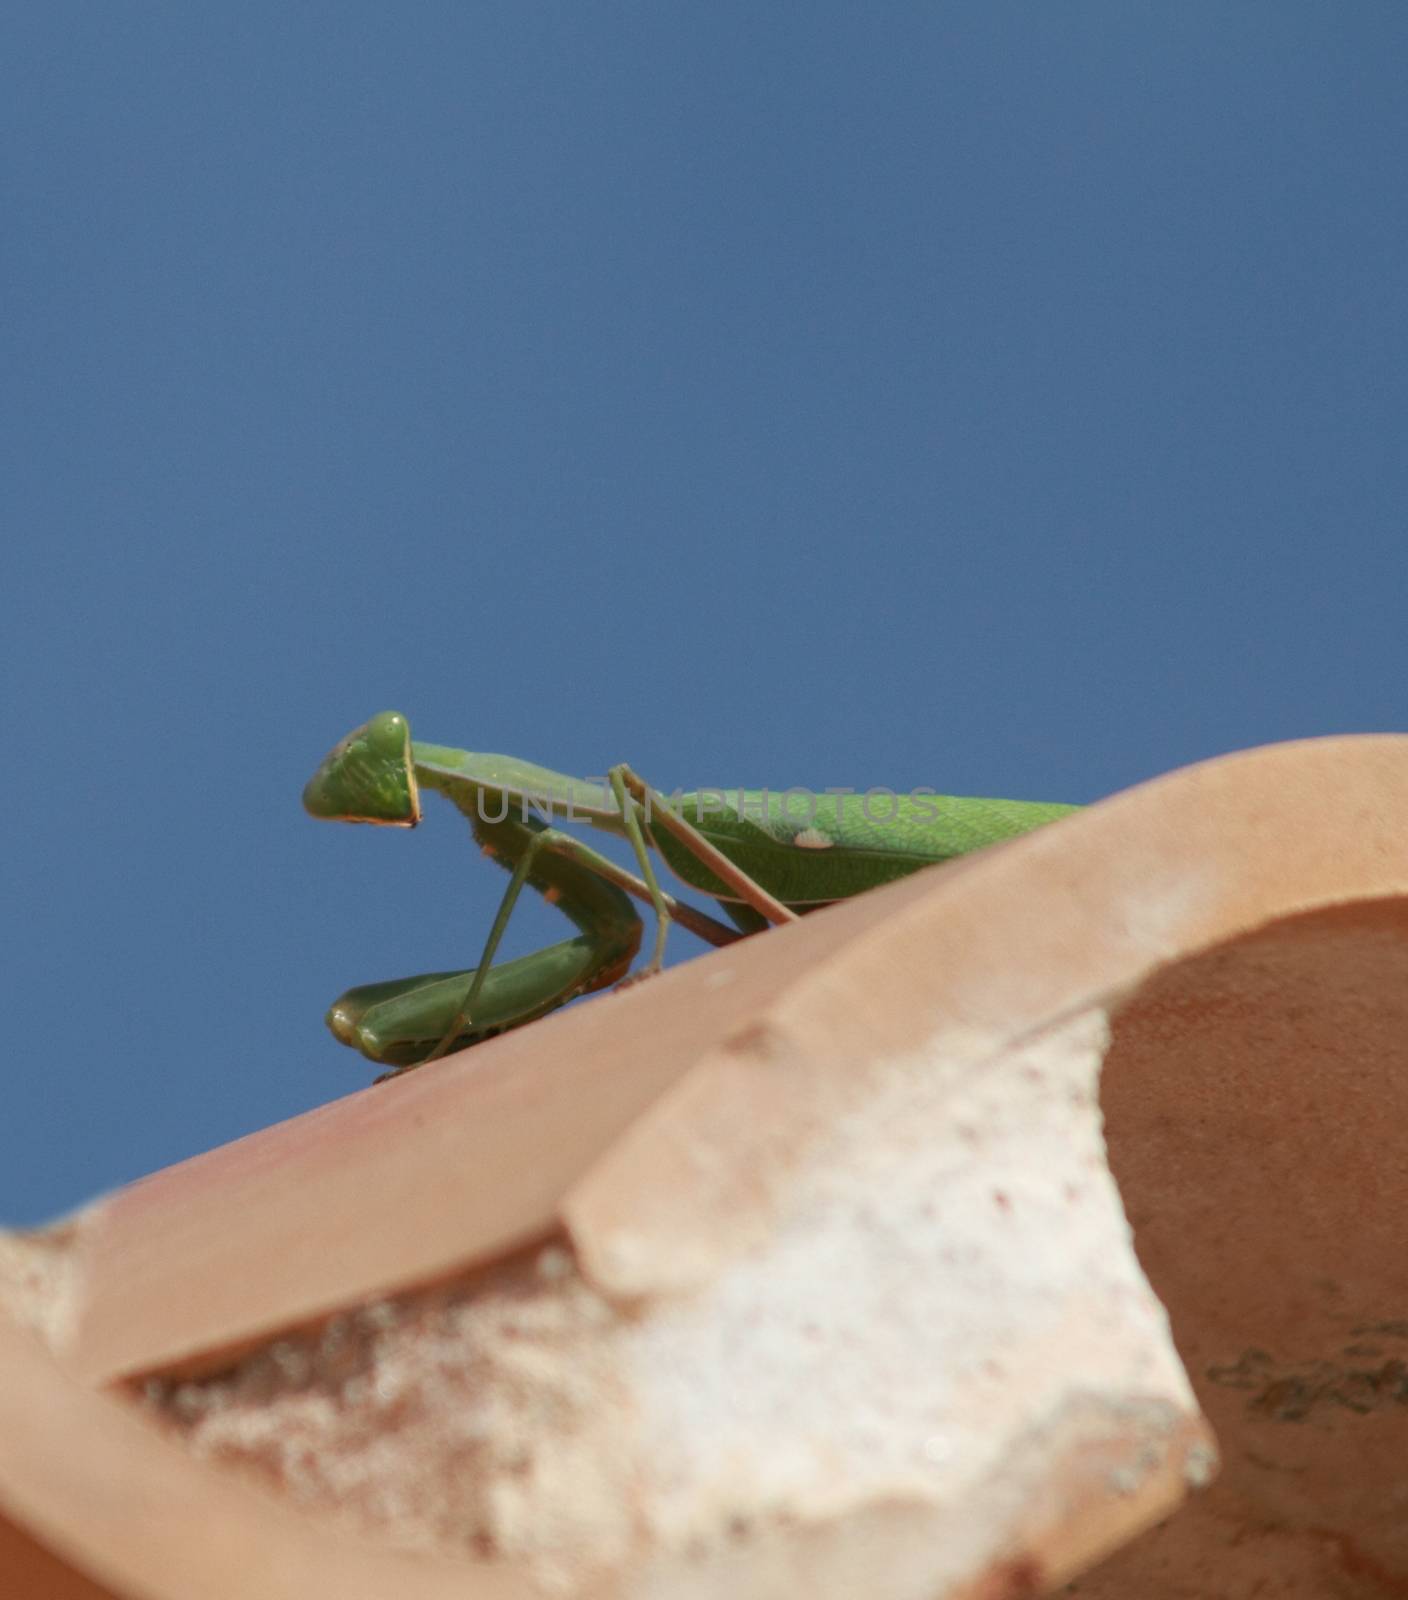 Praying mantis on a roof